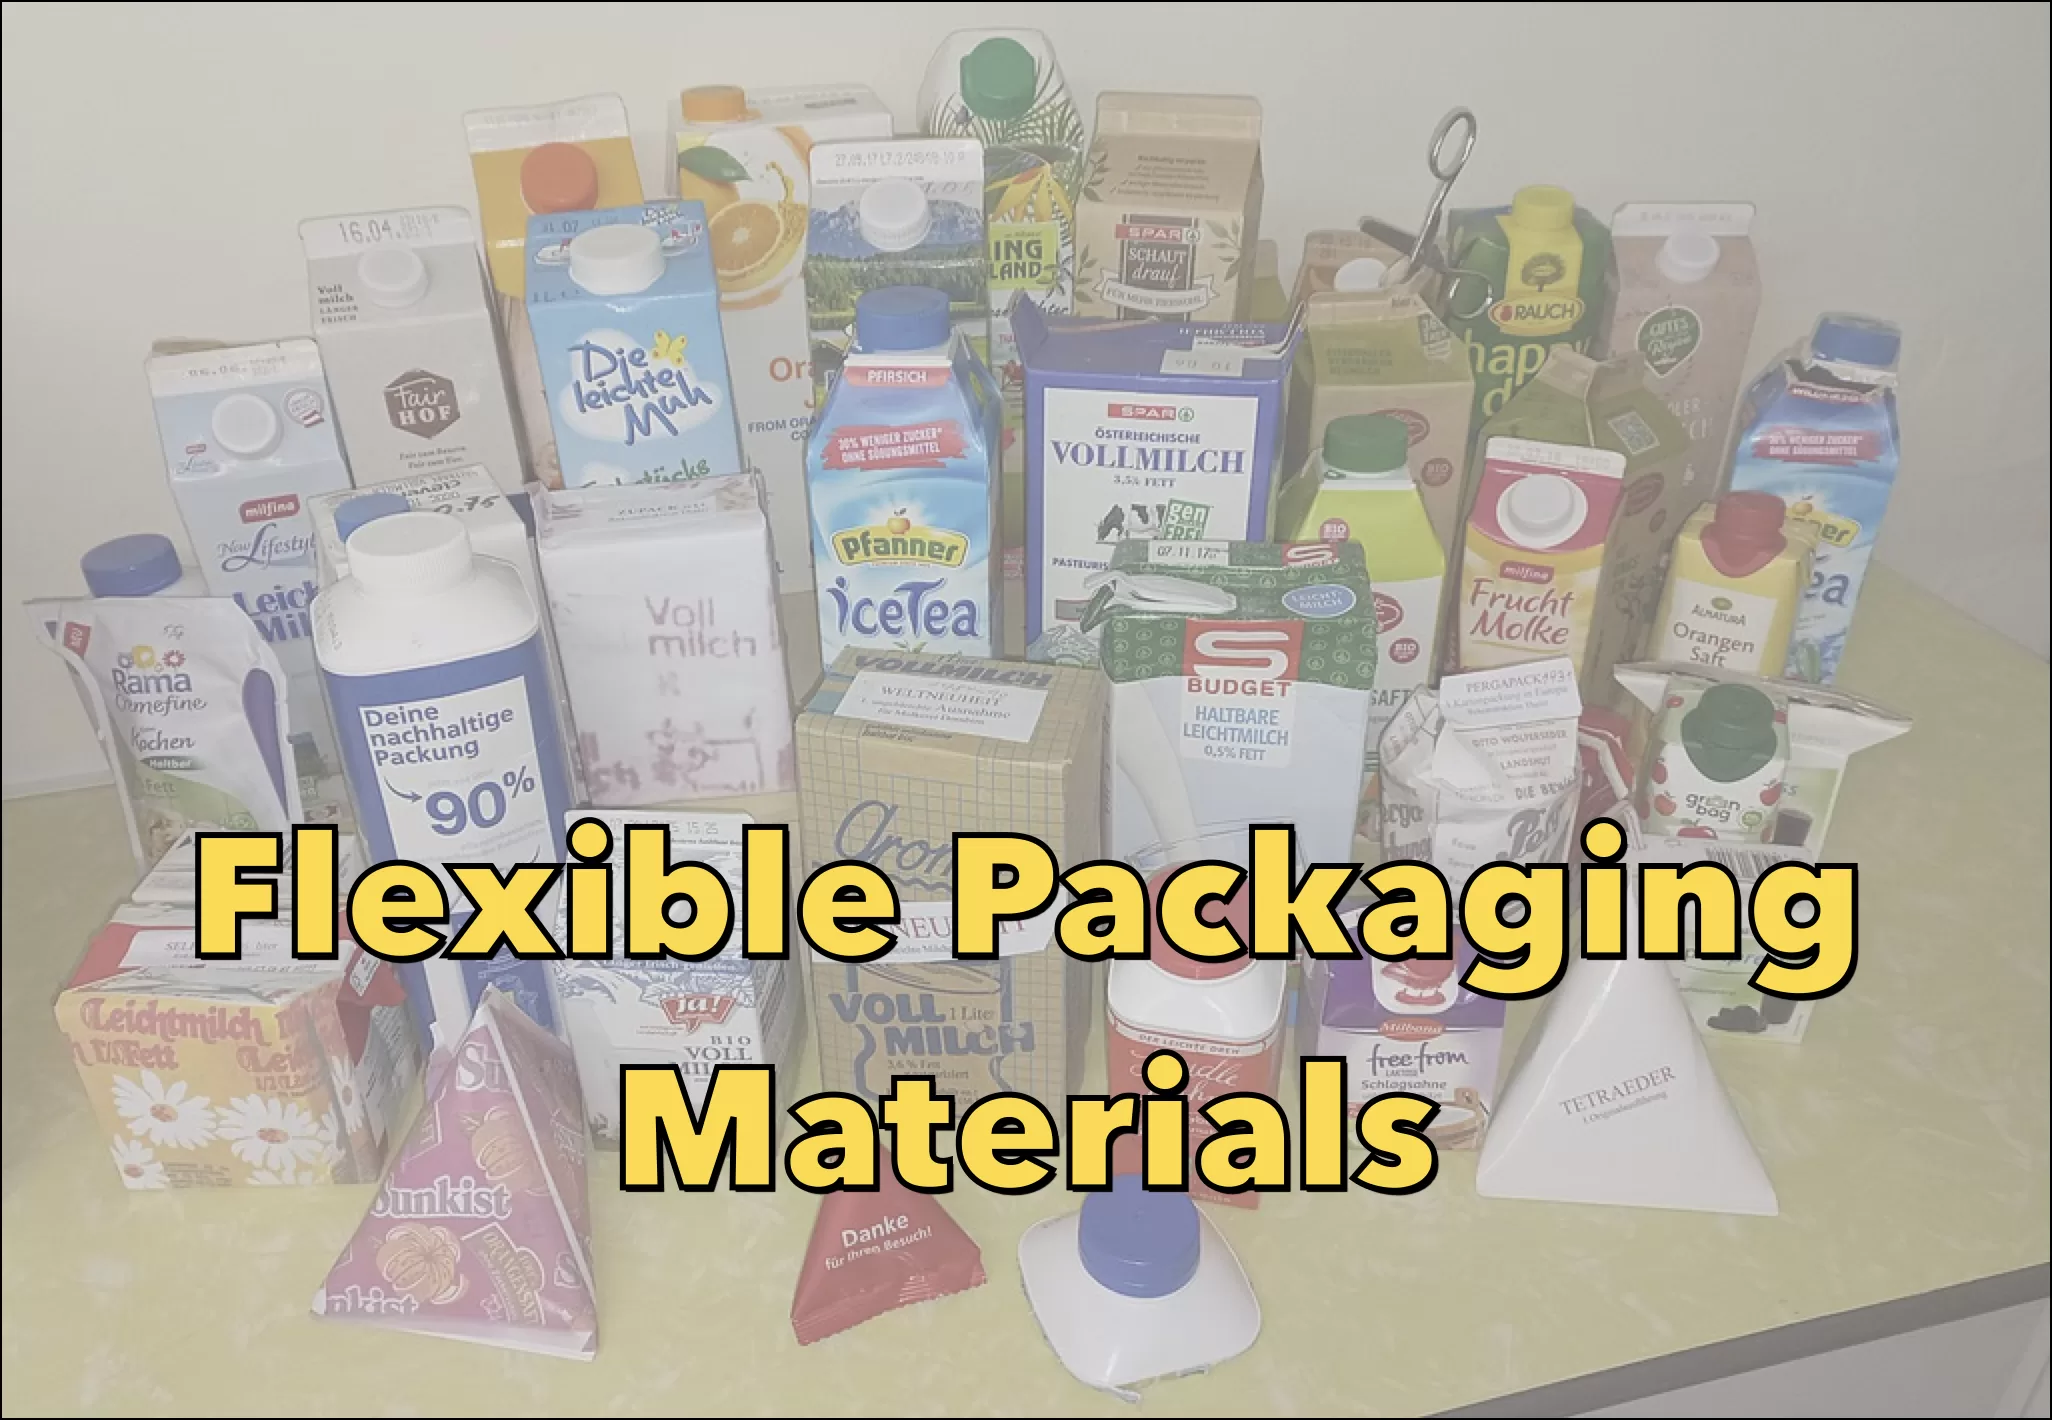 Flexible Packaging